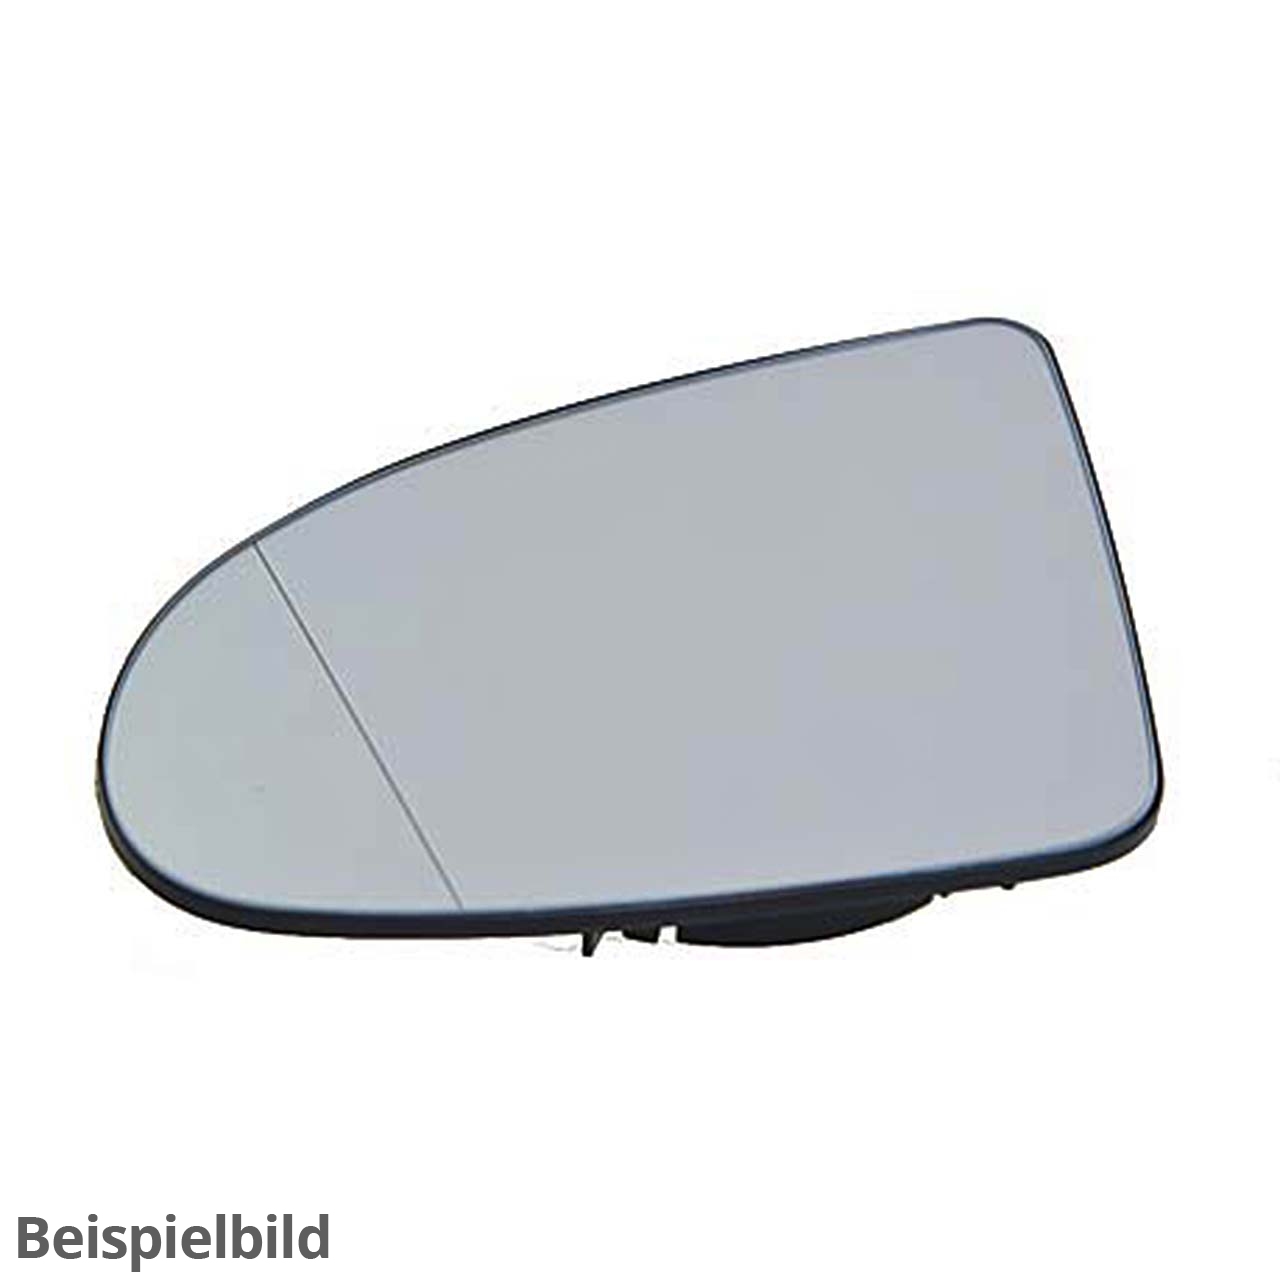 Spiegelglas links (asphärisch weitwinkel) mit Trägerplatte